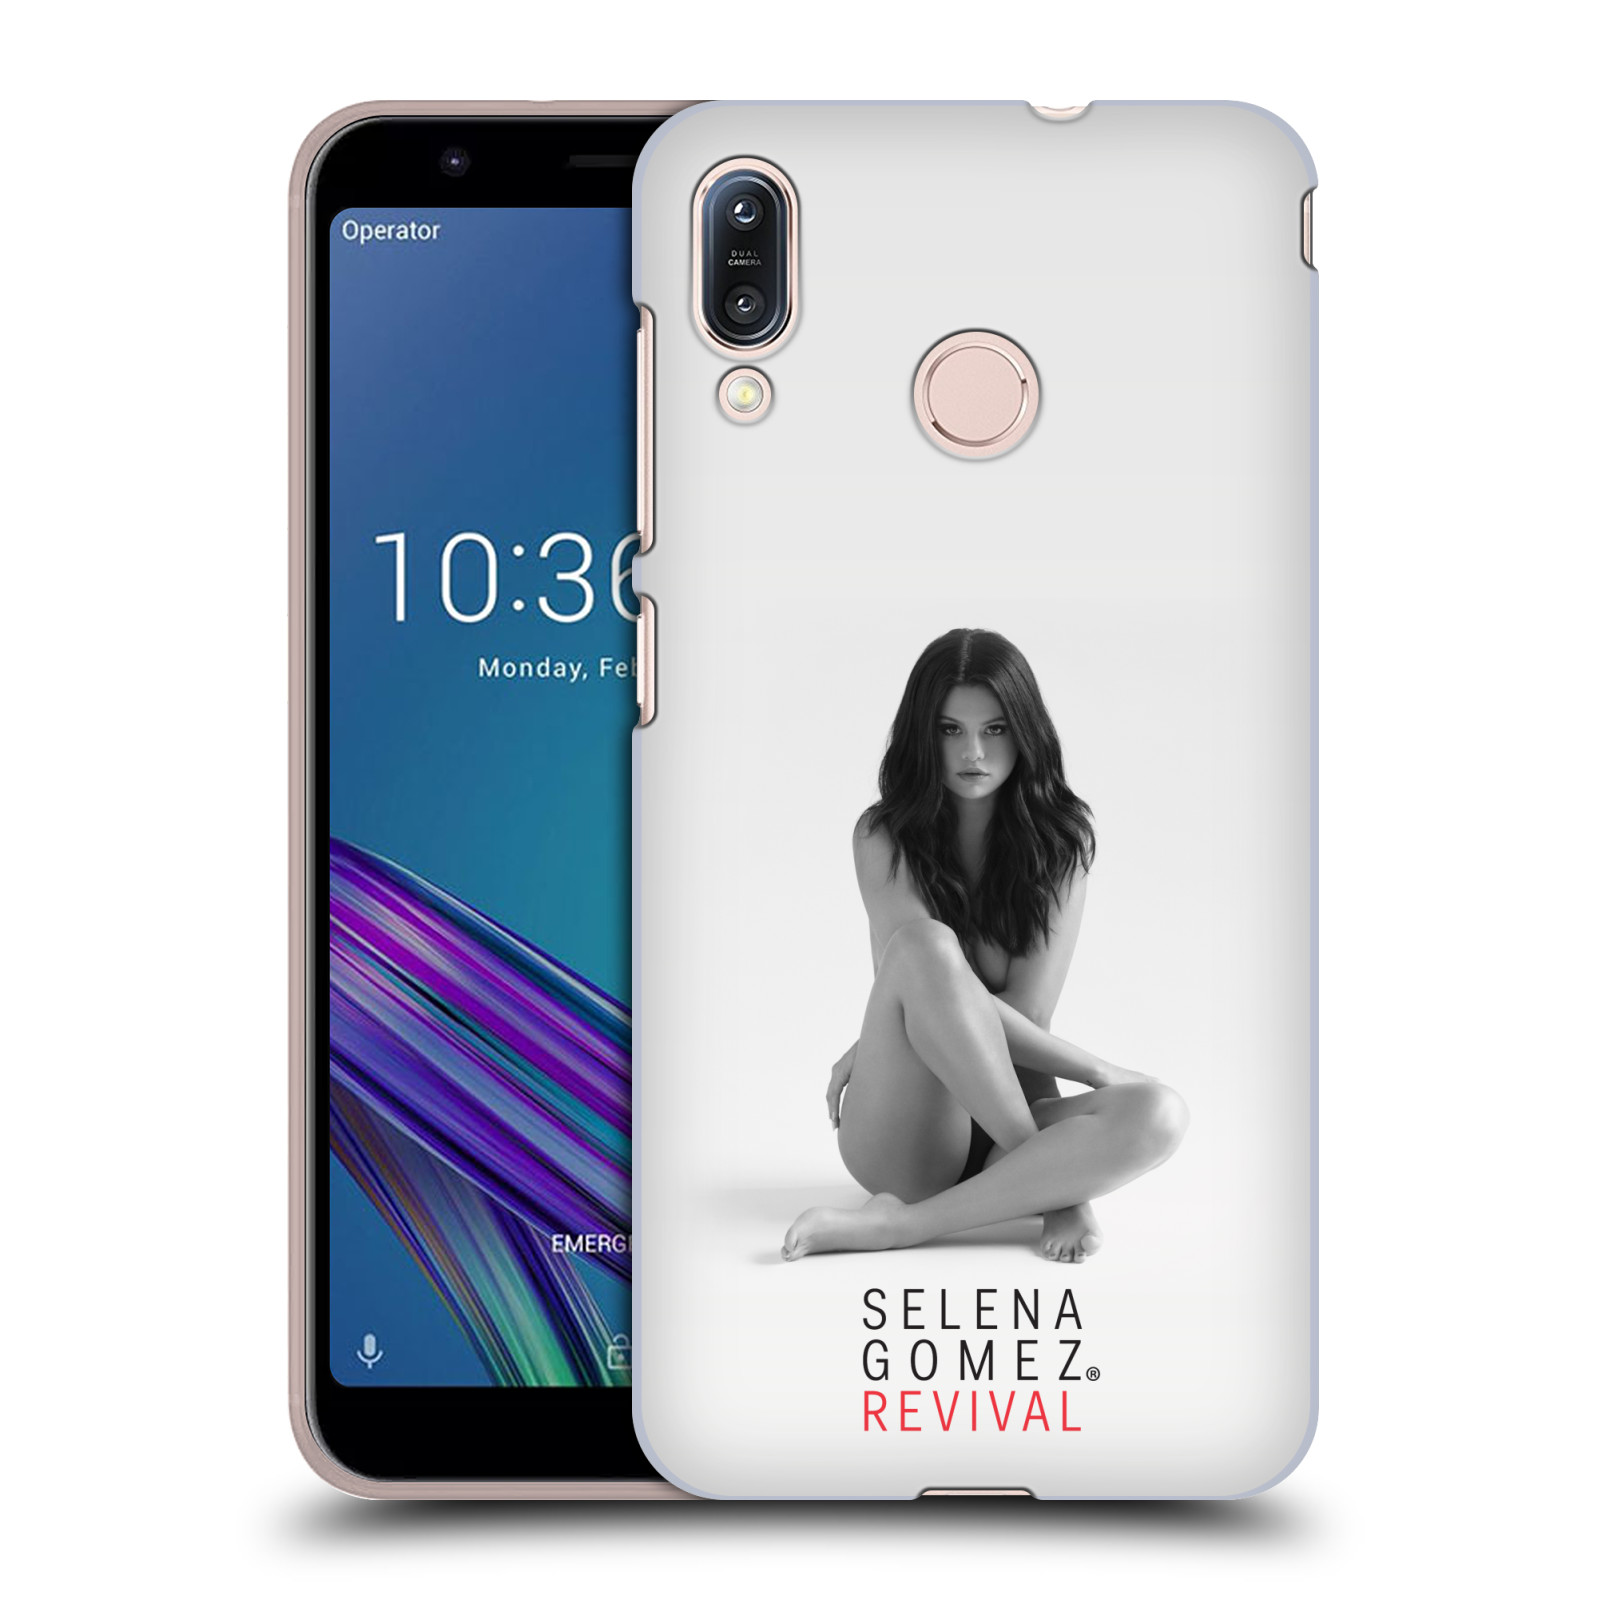 Pouzdro na mobil Asus Zenfone Max M1 (ZB555KL) - HEAD CASE - Zpěvačka Selena Gomez foto Revival